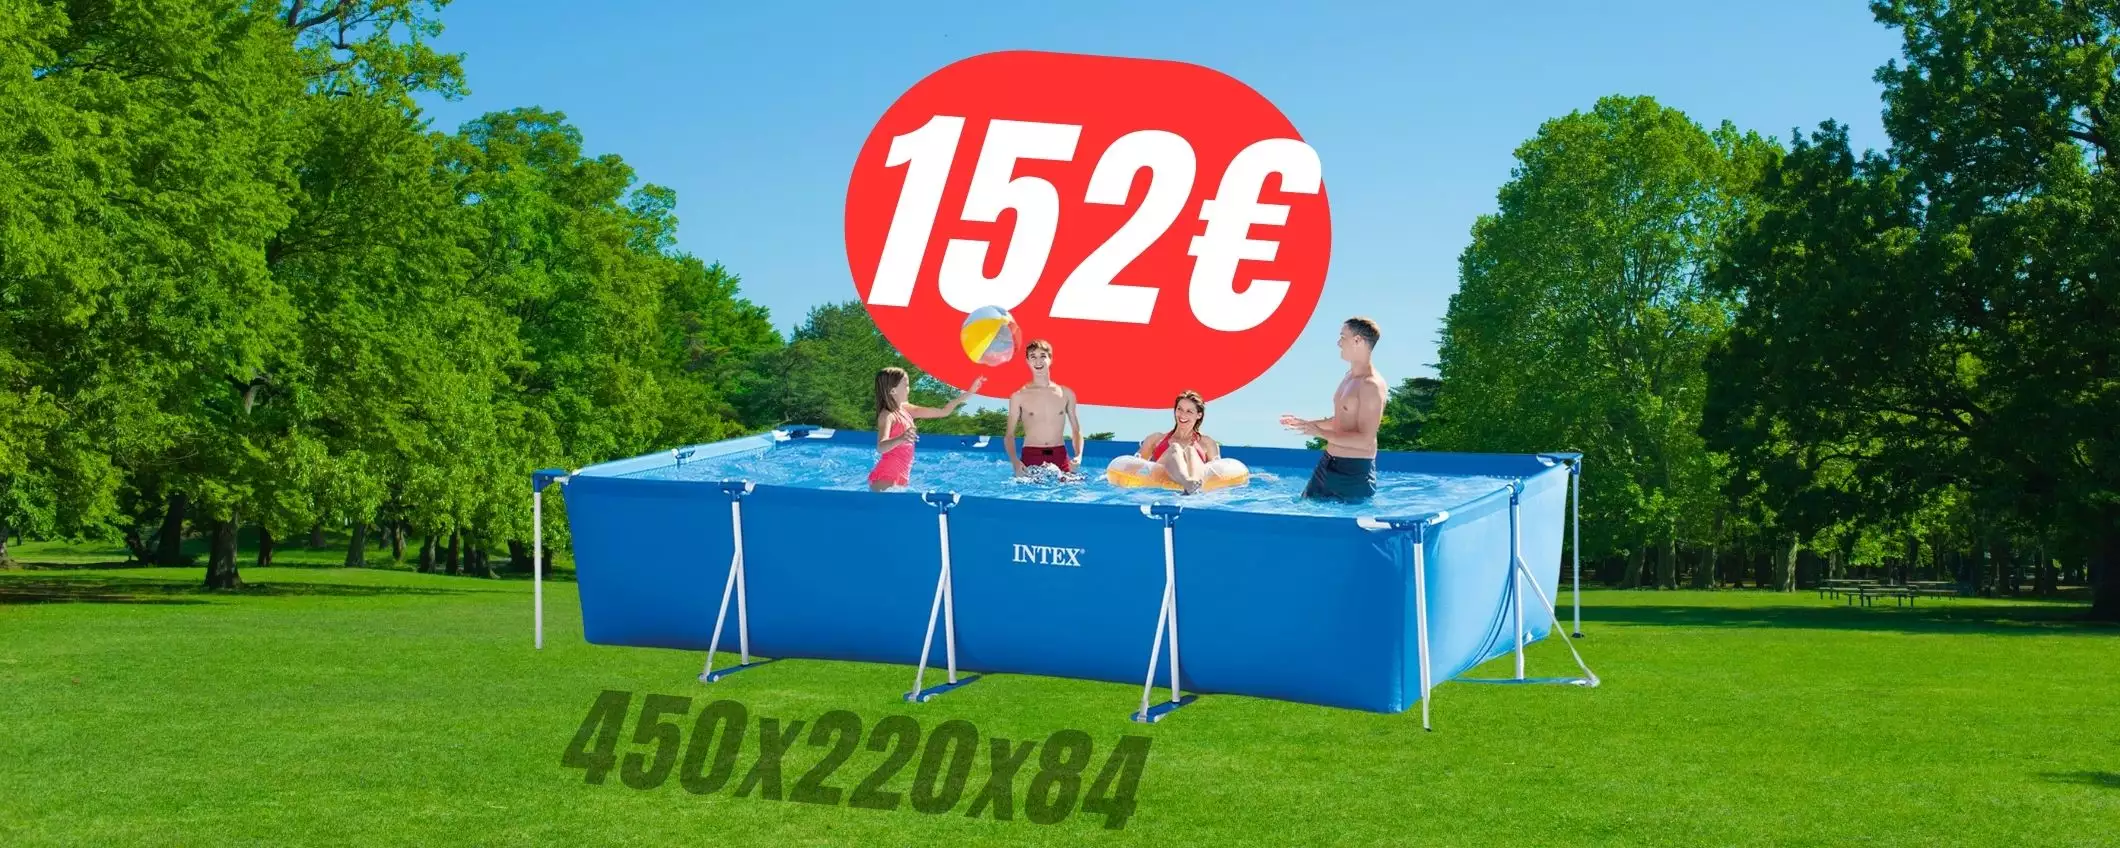 Da 276€ a 152€: la piscina XXL a un prezzo incredibile con il COUPON